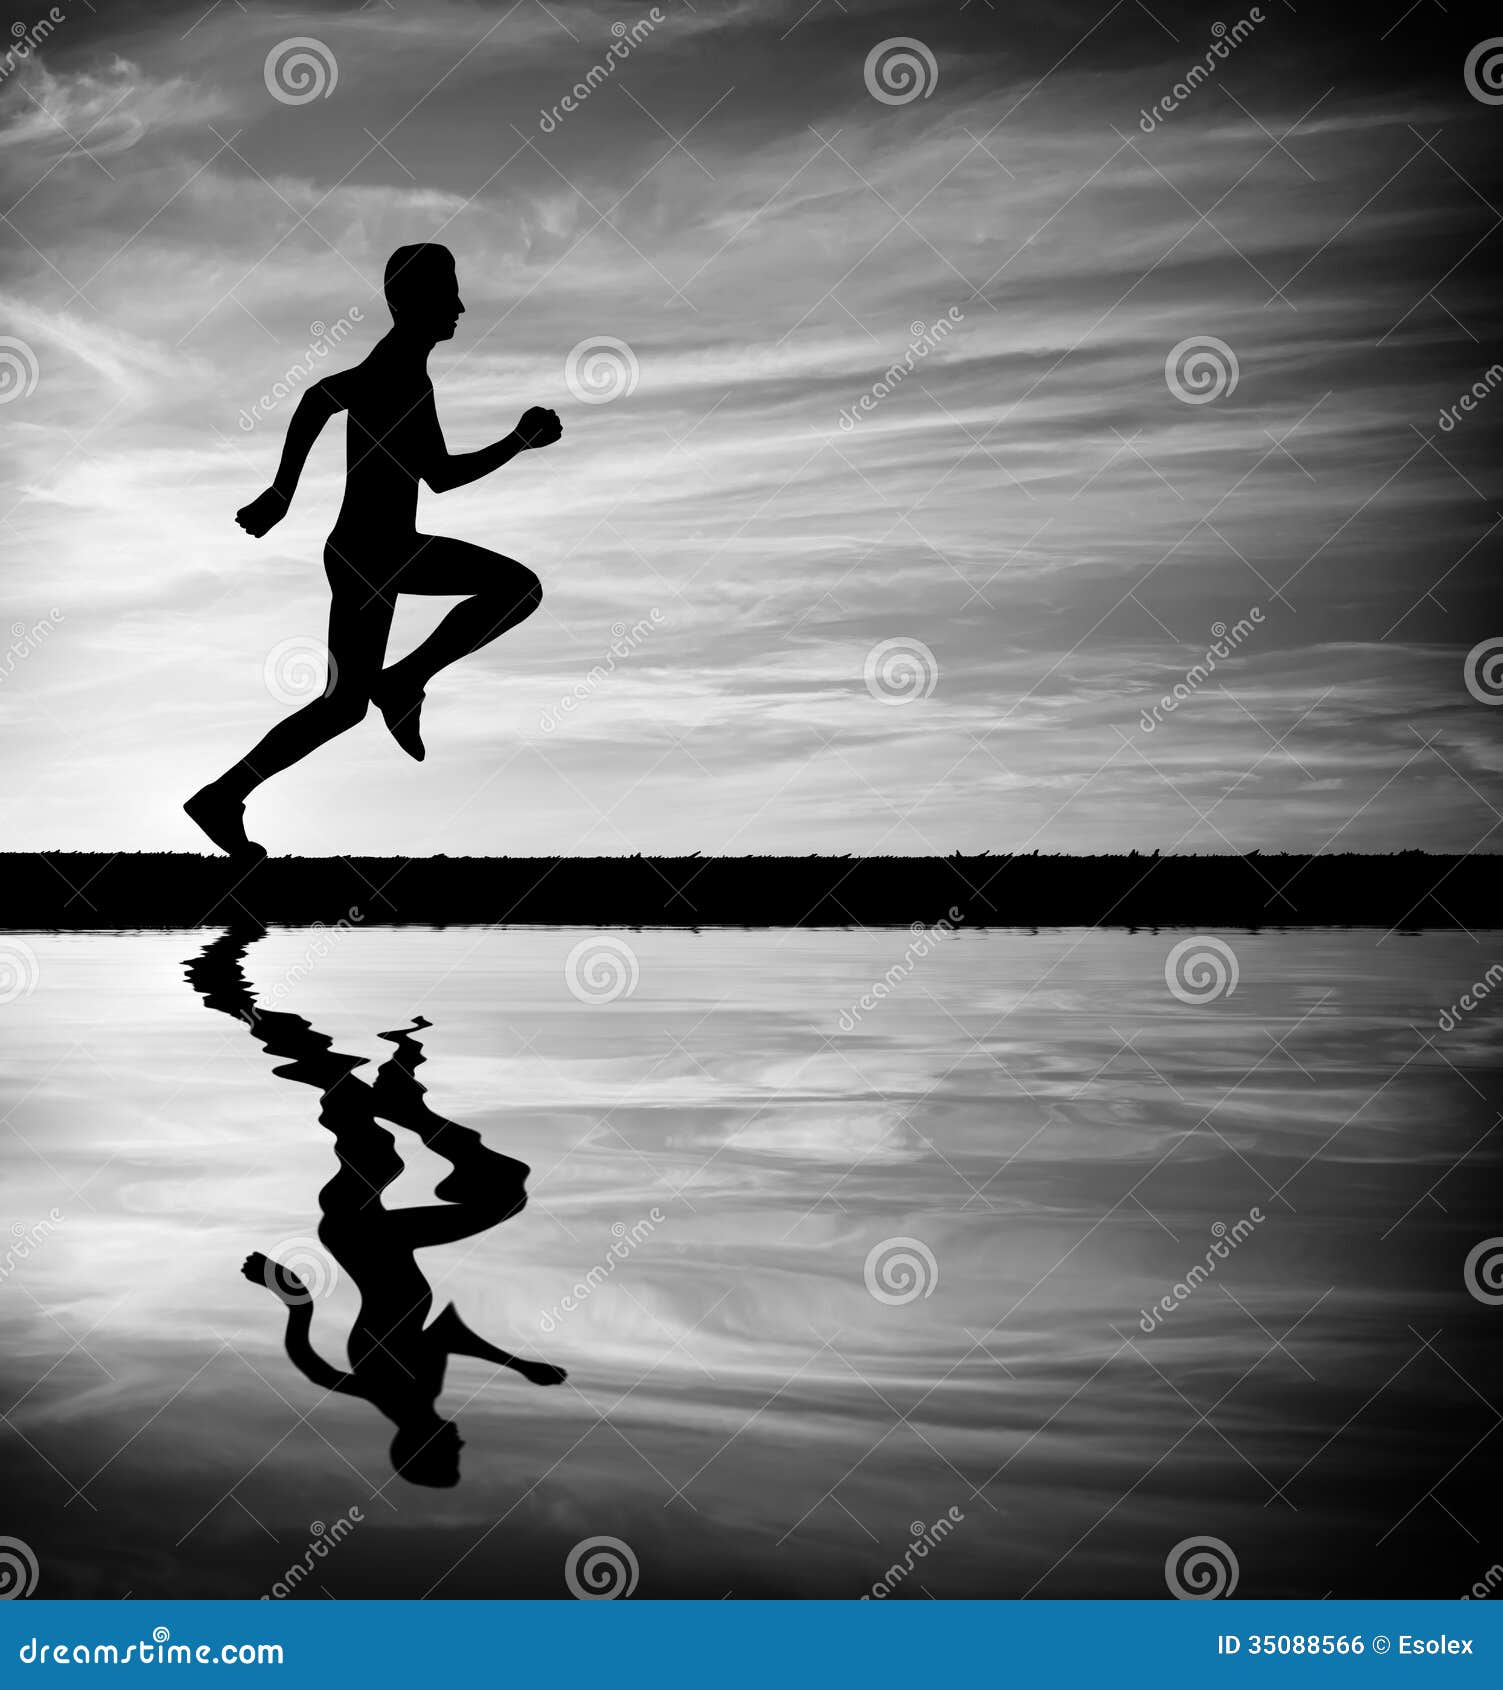 black and white running